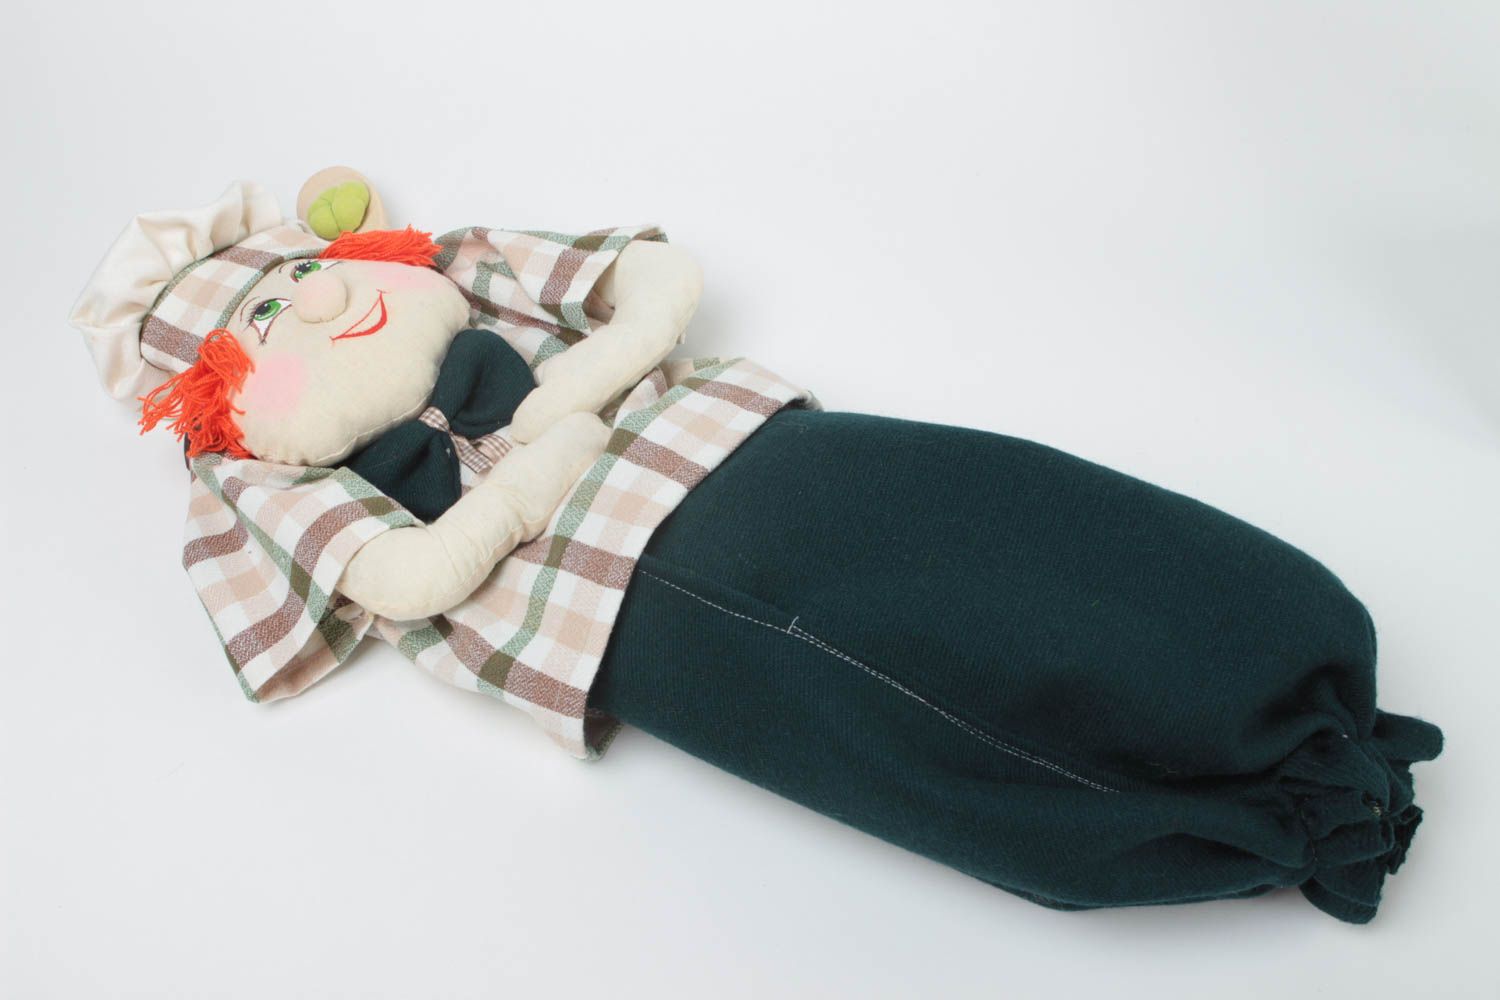 Милая интерьерная кукла из ткани с росписью для хранения пакетов ручная работа фото 2